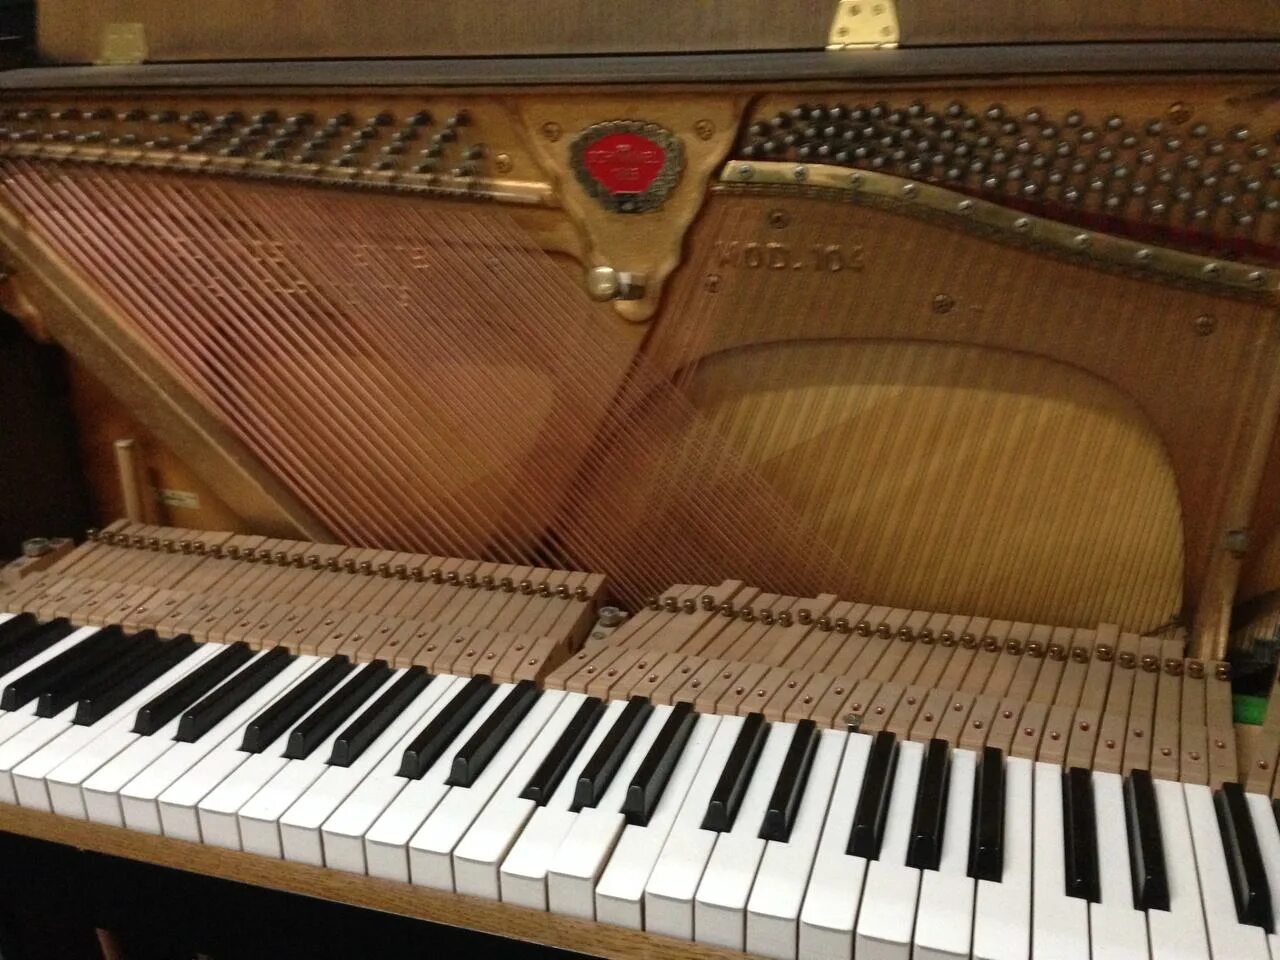 Рояль Schimmel Pegasus. Schimmel Pegasus Grand Piano. Клавиши рояля одна запавшая. Клавиша запала пианино. На клавишах тургенева